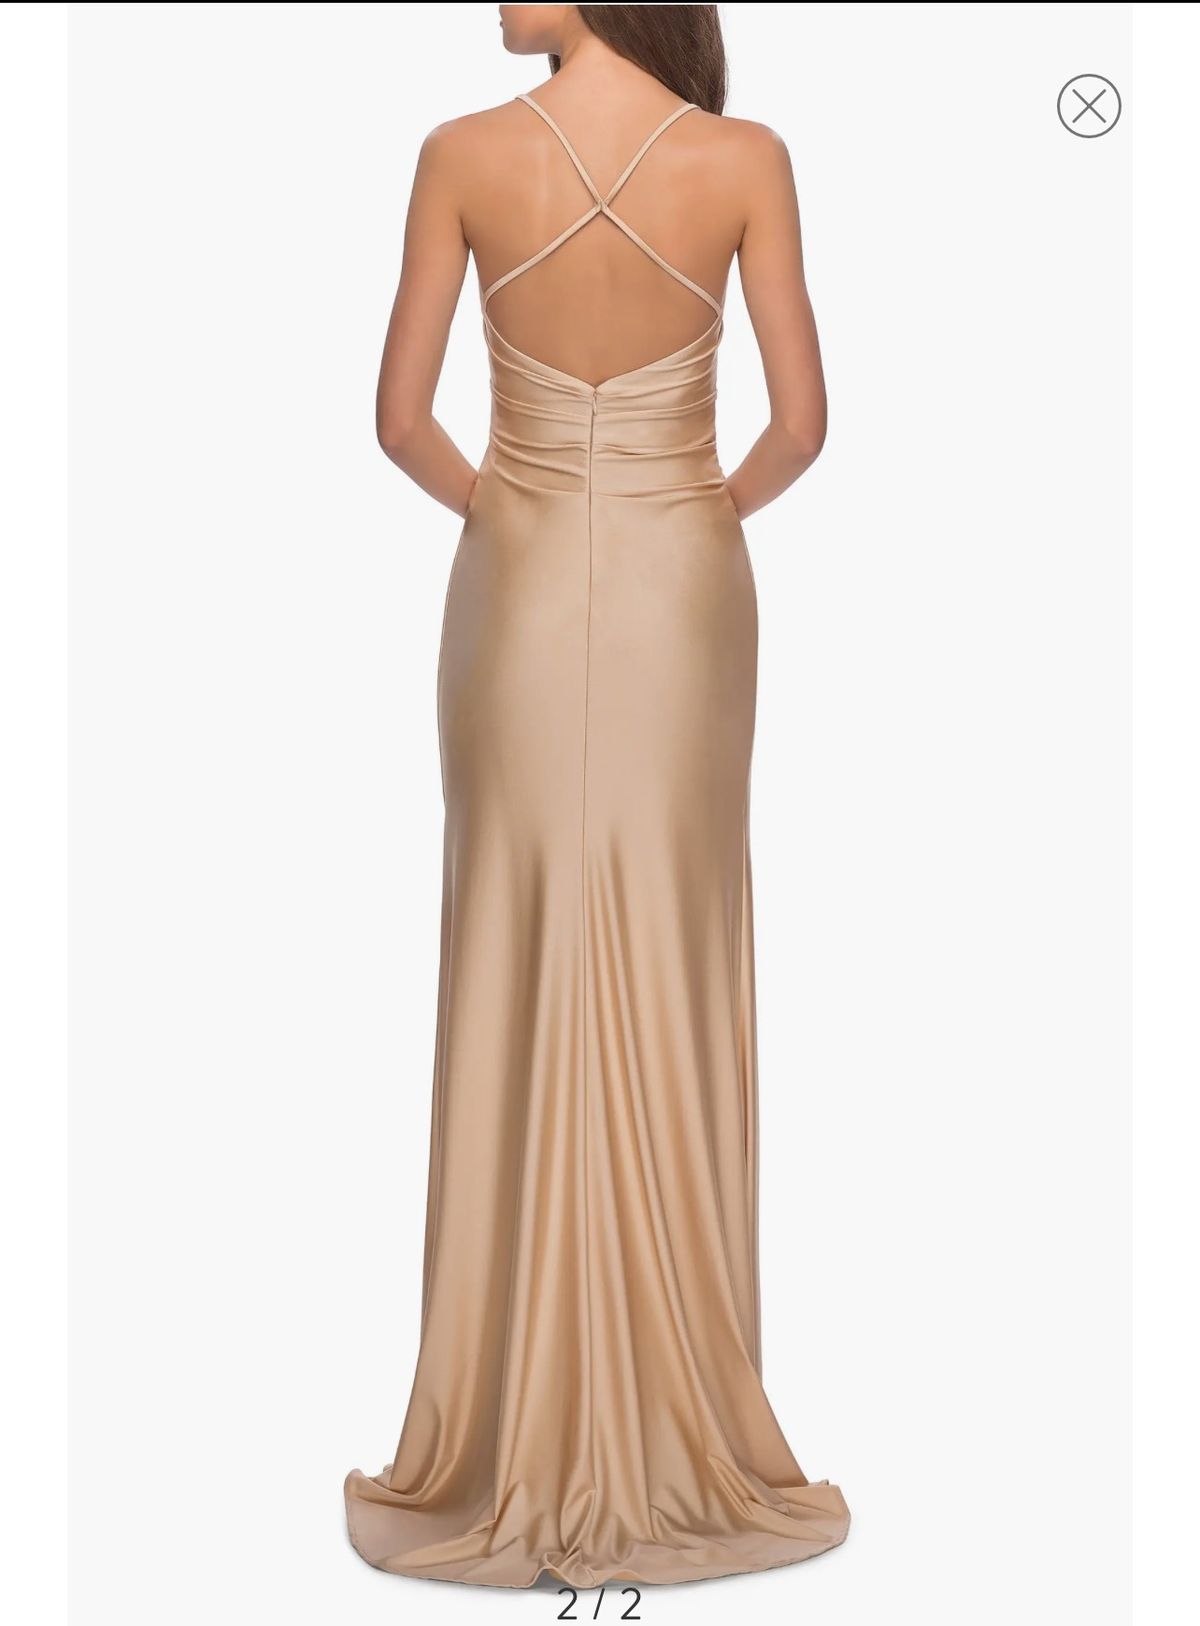 La Femme Size 2 Bridesmaid Plunge Gold Side Slit Dress on Queenly